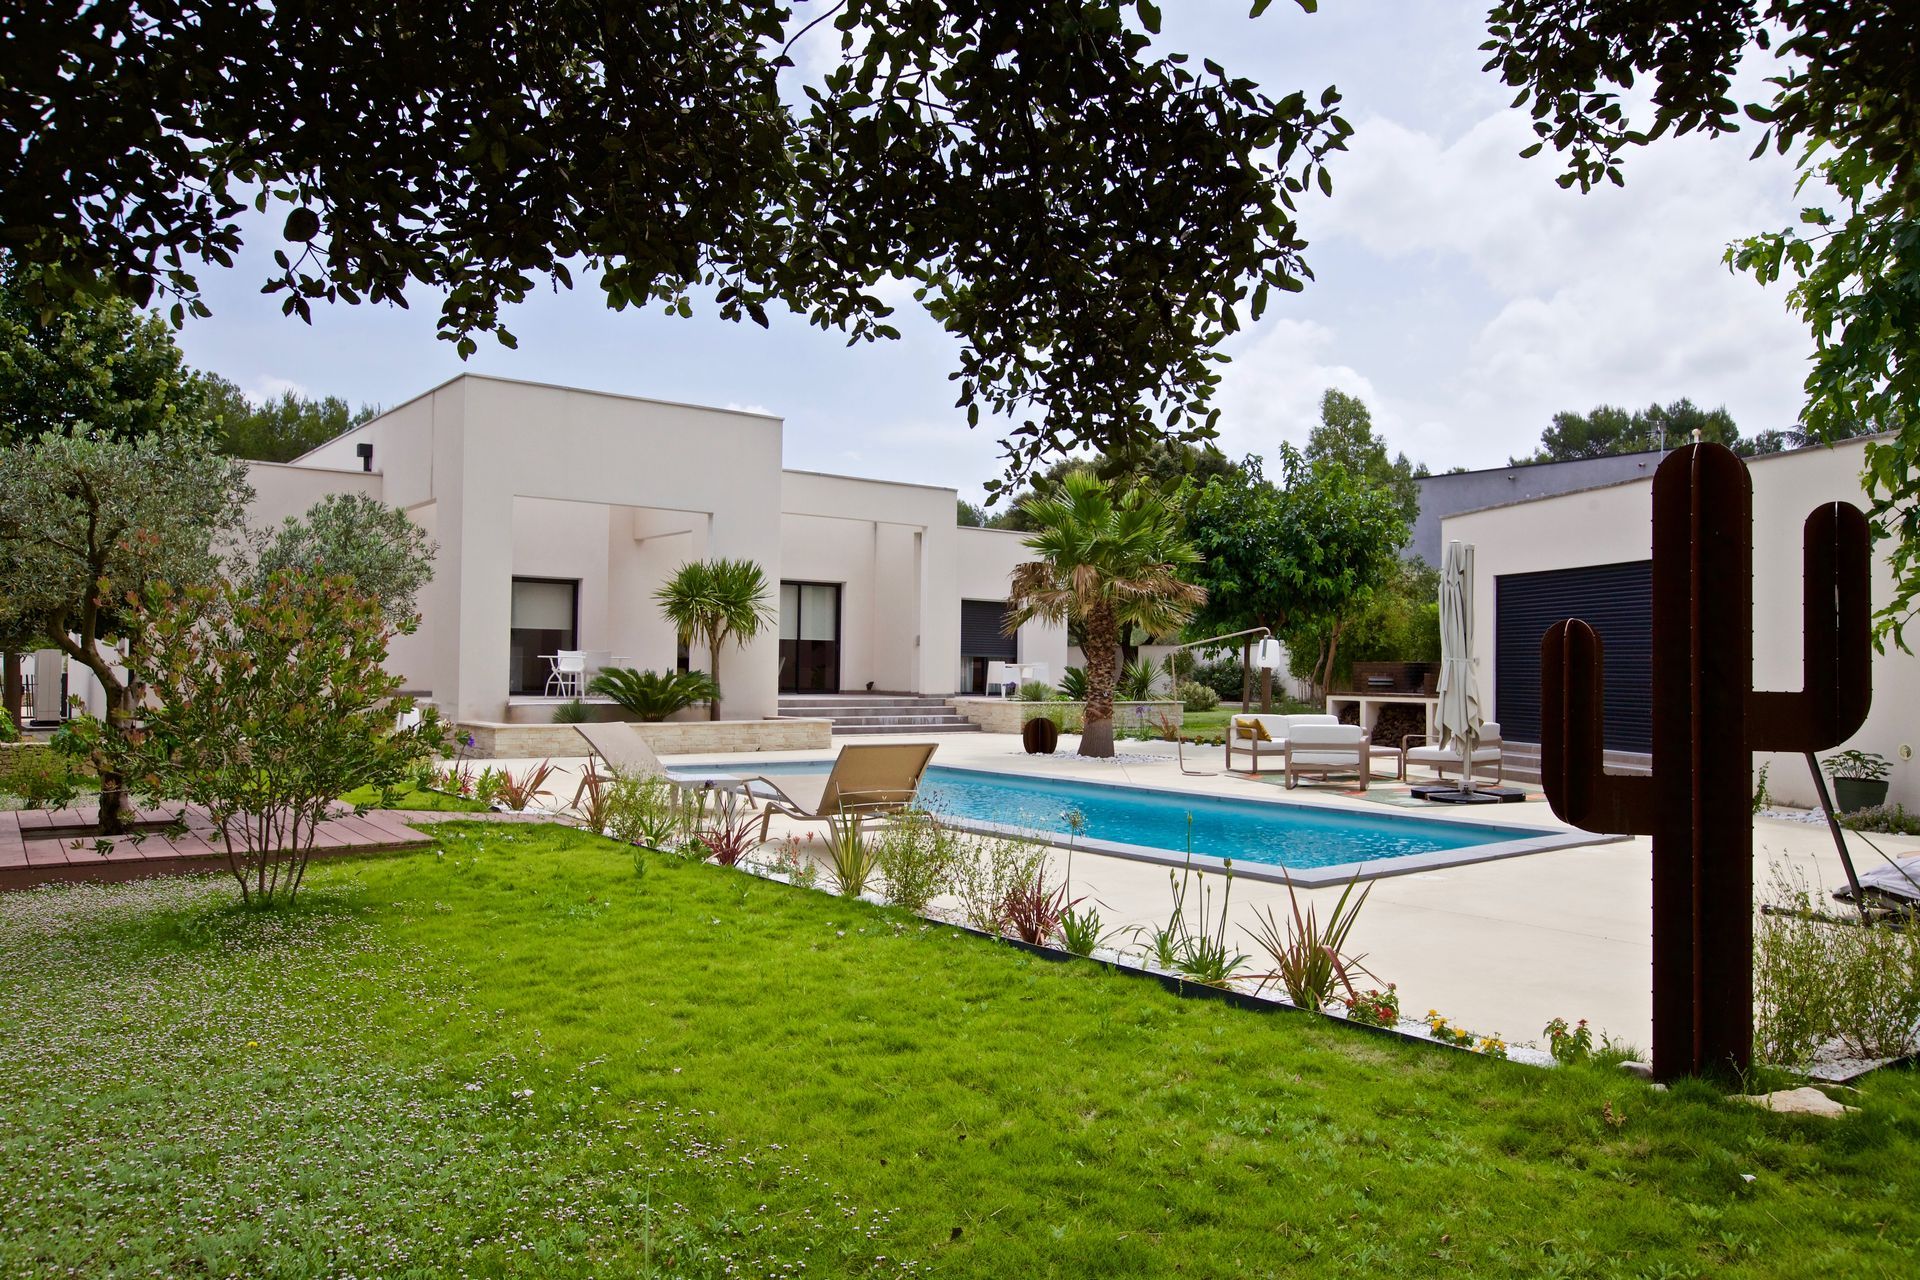 Maison moderne à toit plat avec terrasse et piscine